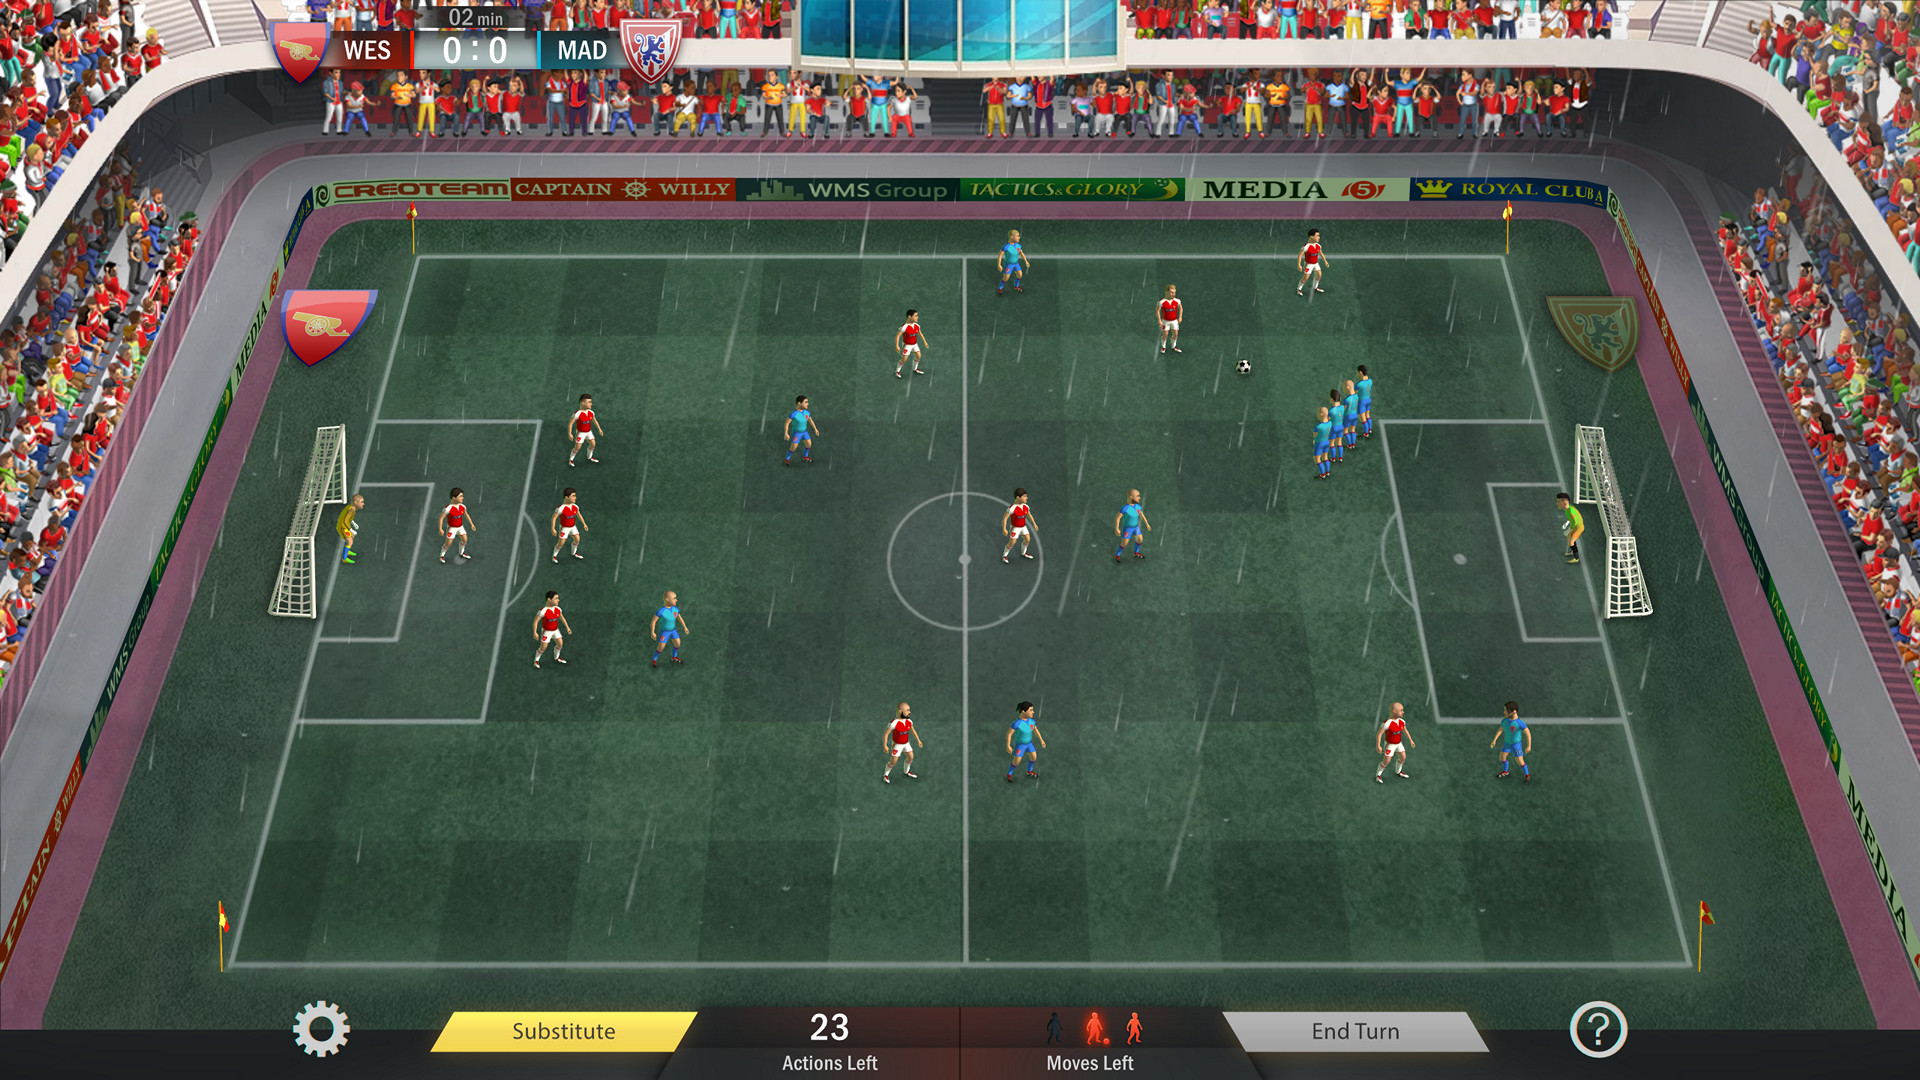 download football tactics & glory